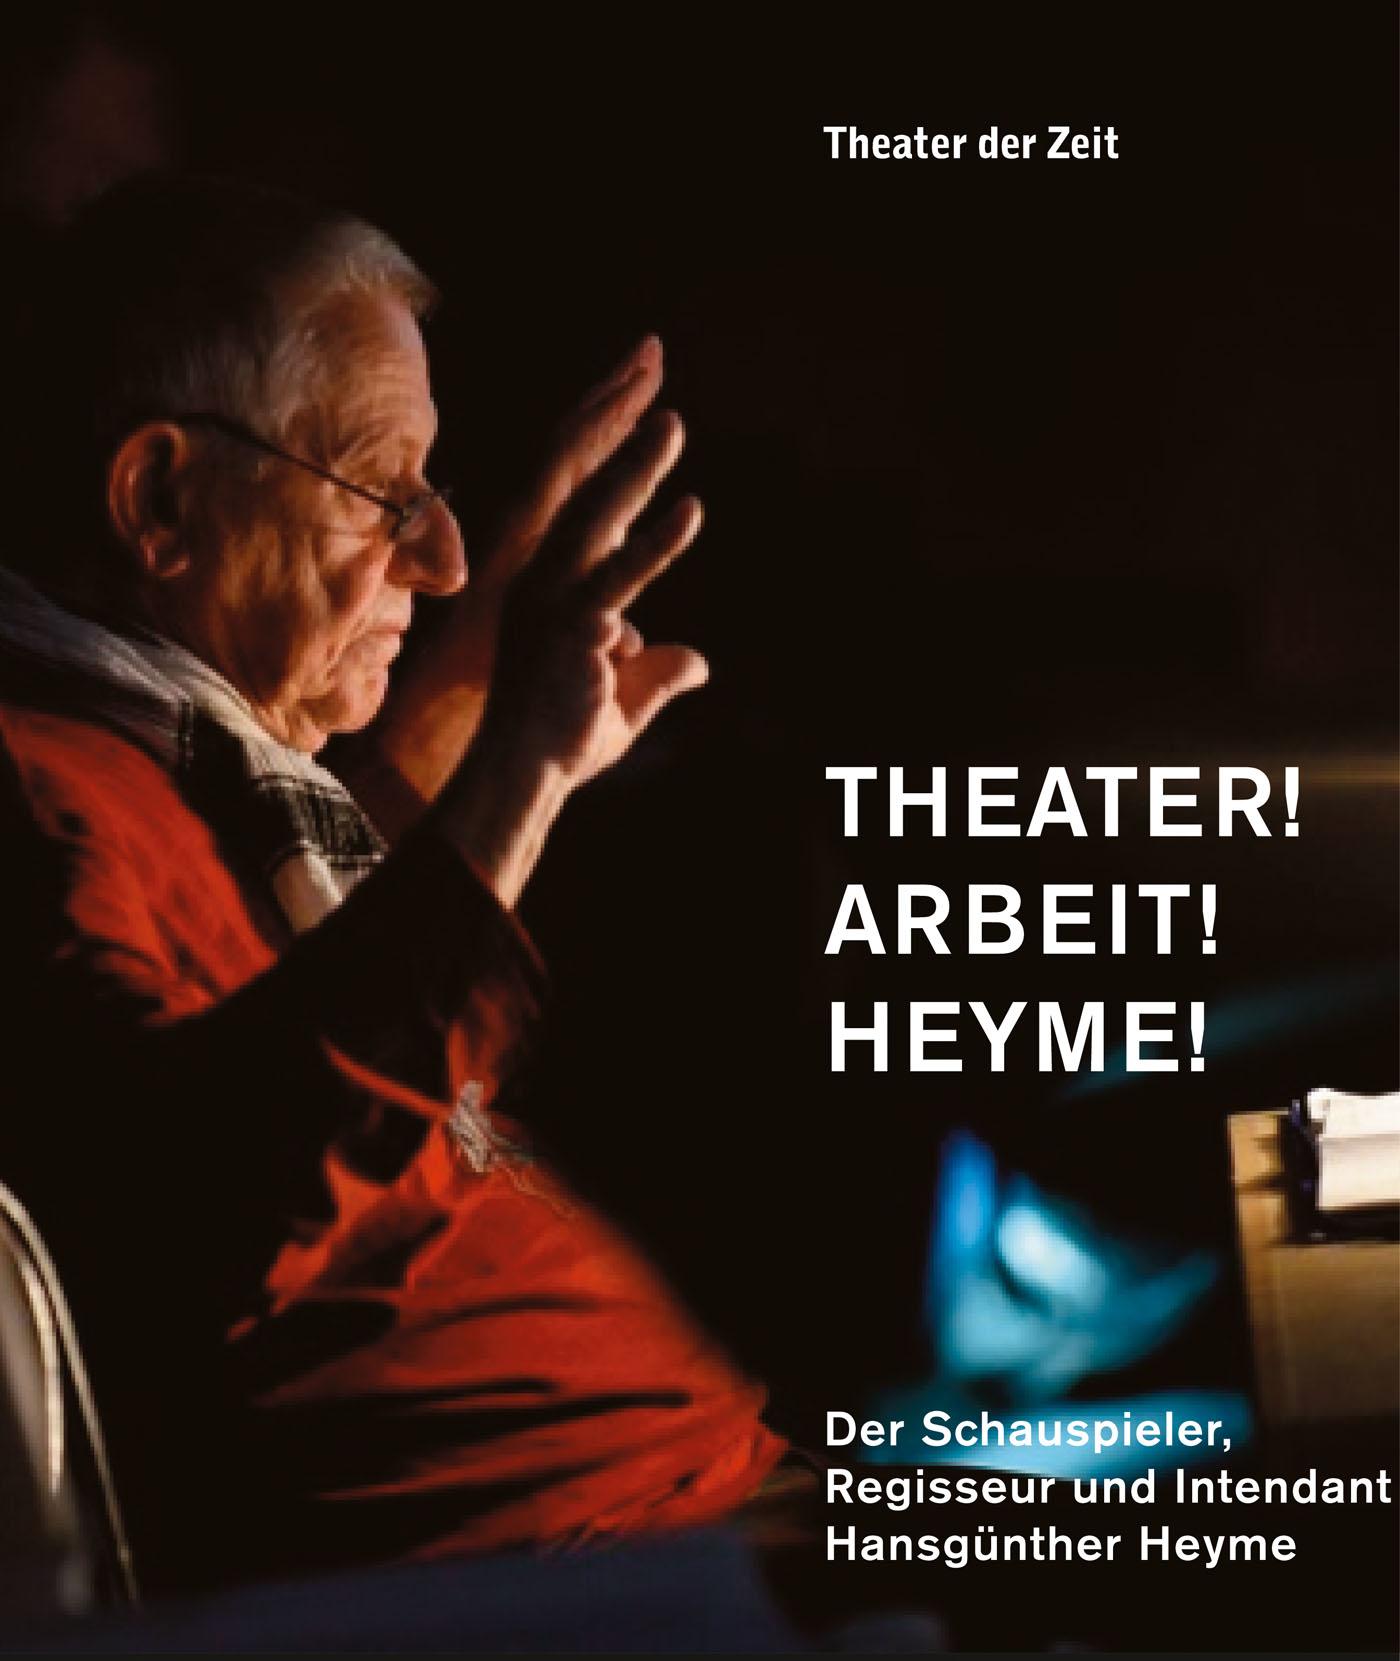 "Theater! Arbeit! Heyme!"